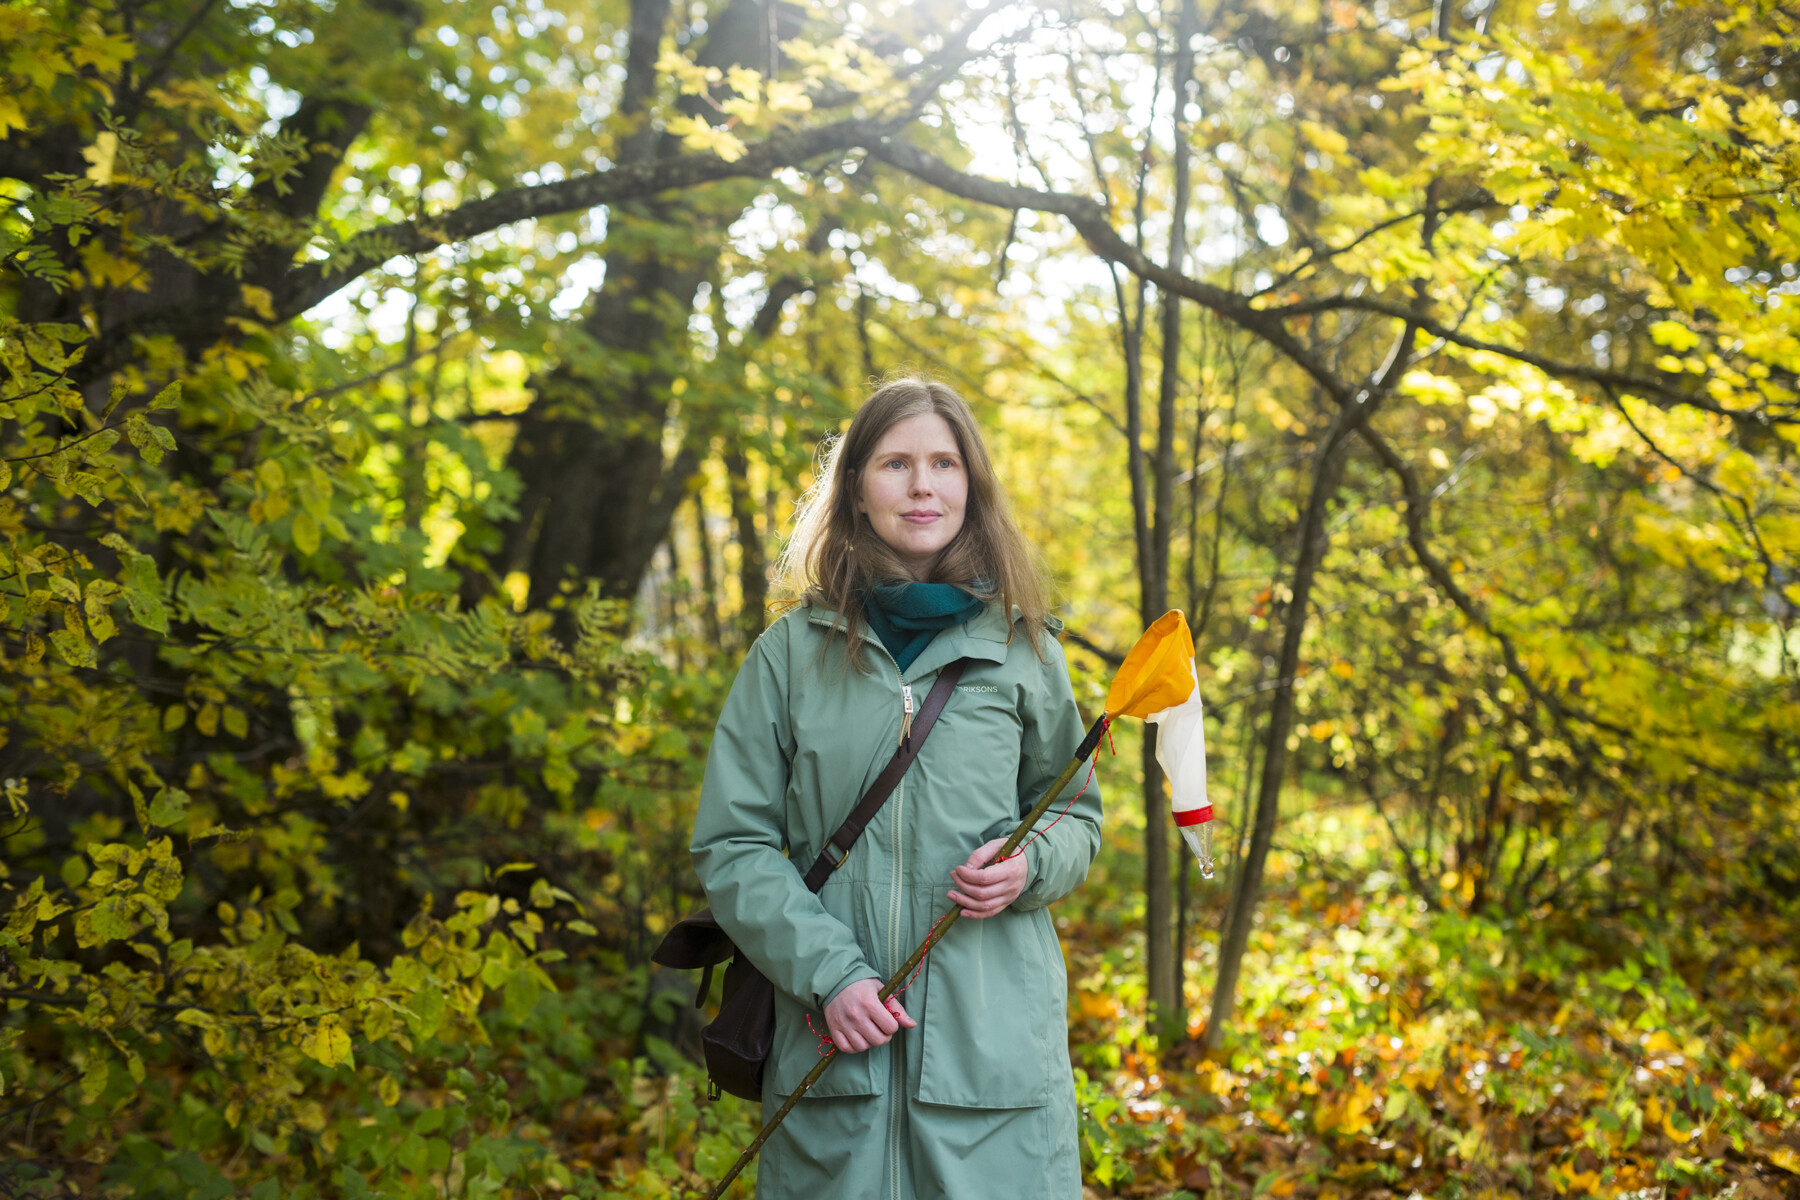 Женщина стоит посреди леса, держа в руке небольшого размера сачок на длинной ручке.